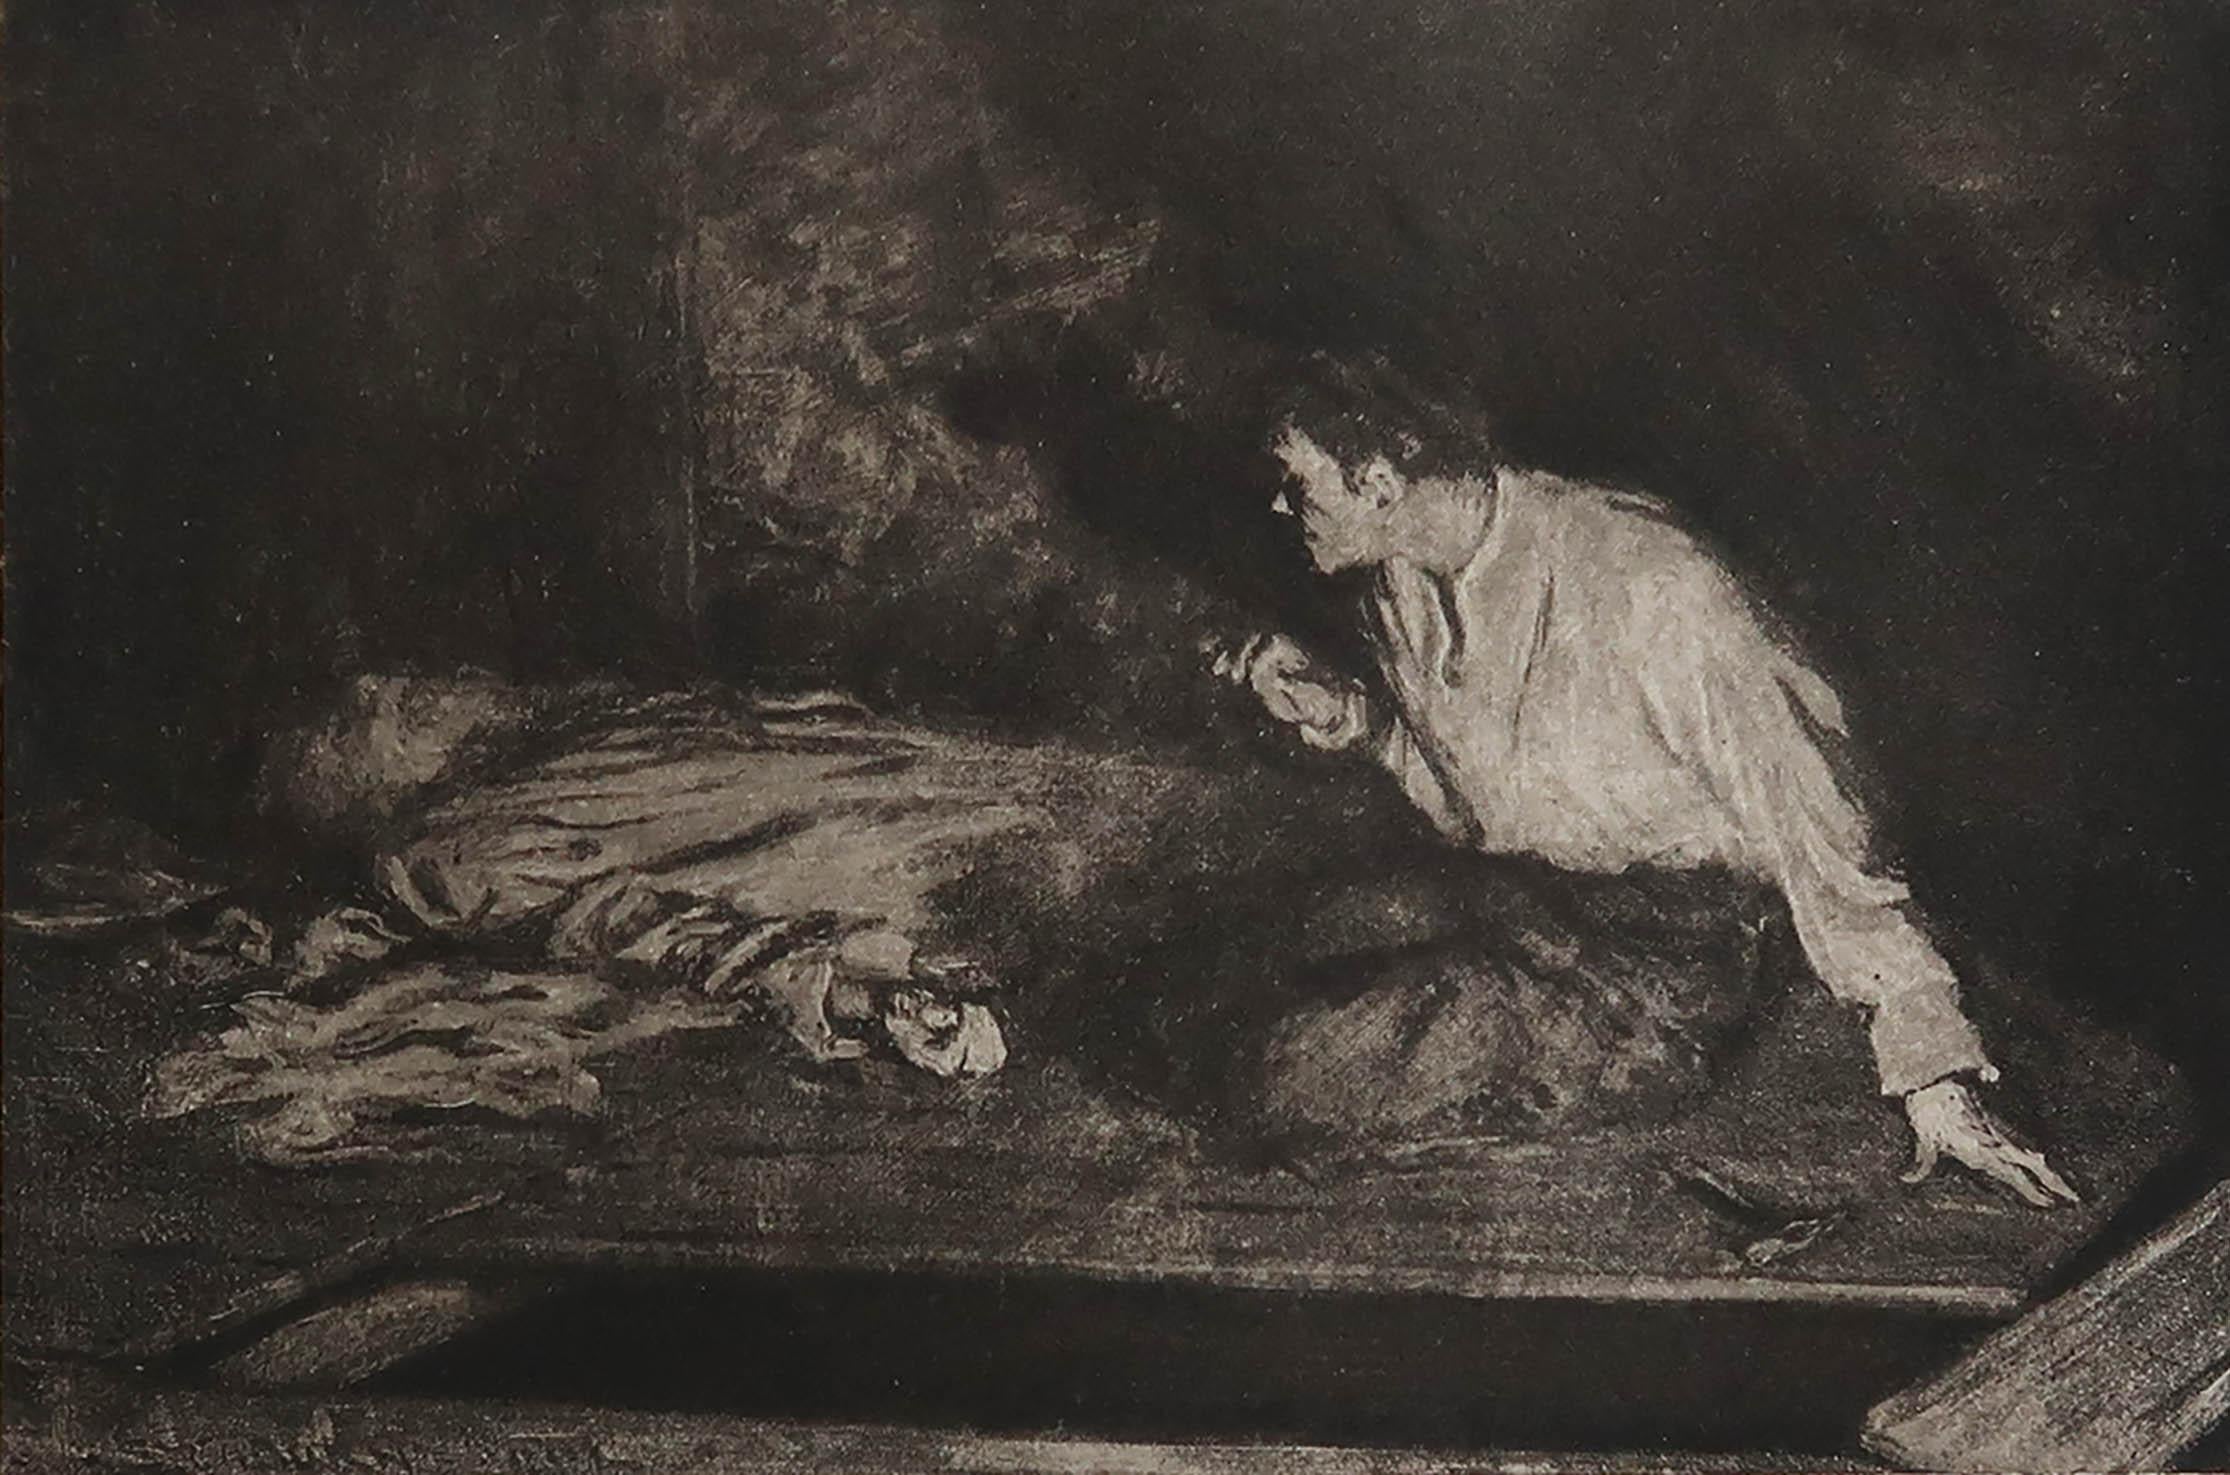 Image sensationnelle de Frederick Simpson Coburn.

Dans le style de l'un de mes artistes préférés, Goya.

Photogravure

Edition limitée à 300 exemplaires. C'est le numéro 84.

Extrait des Œuvres complètes d'Edgar Allen Poe

Publié par Putnam, New